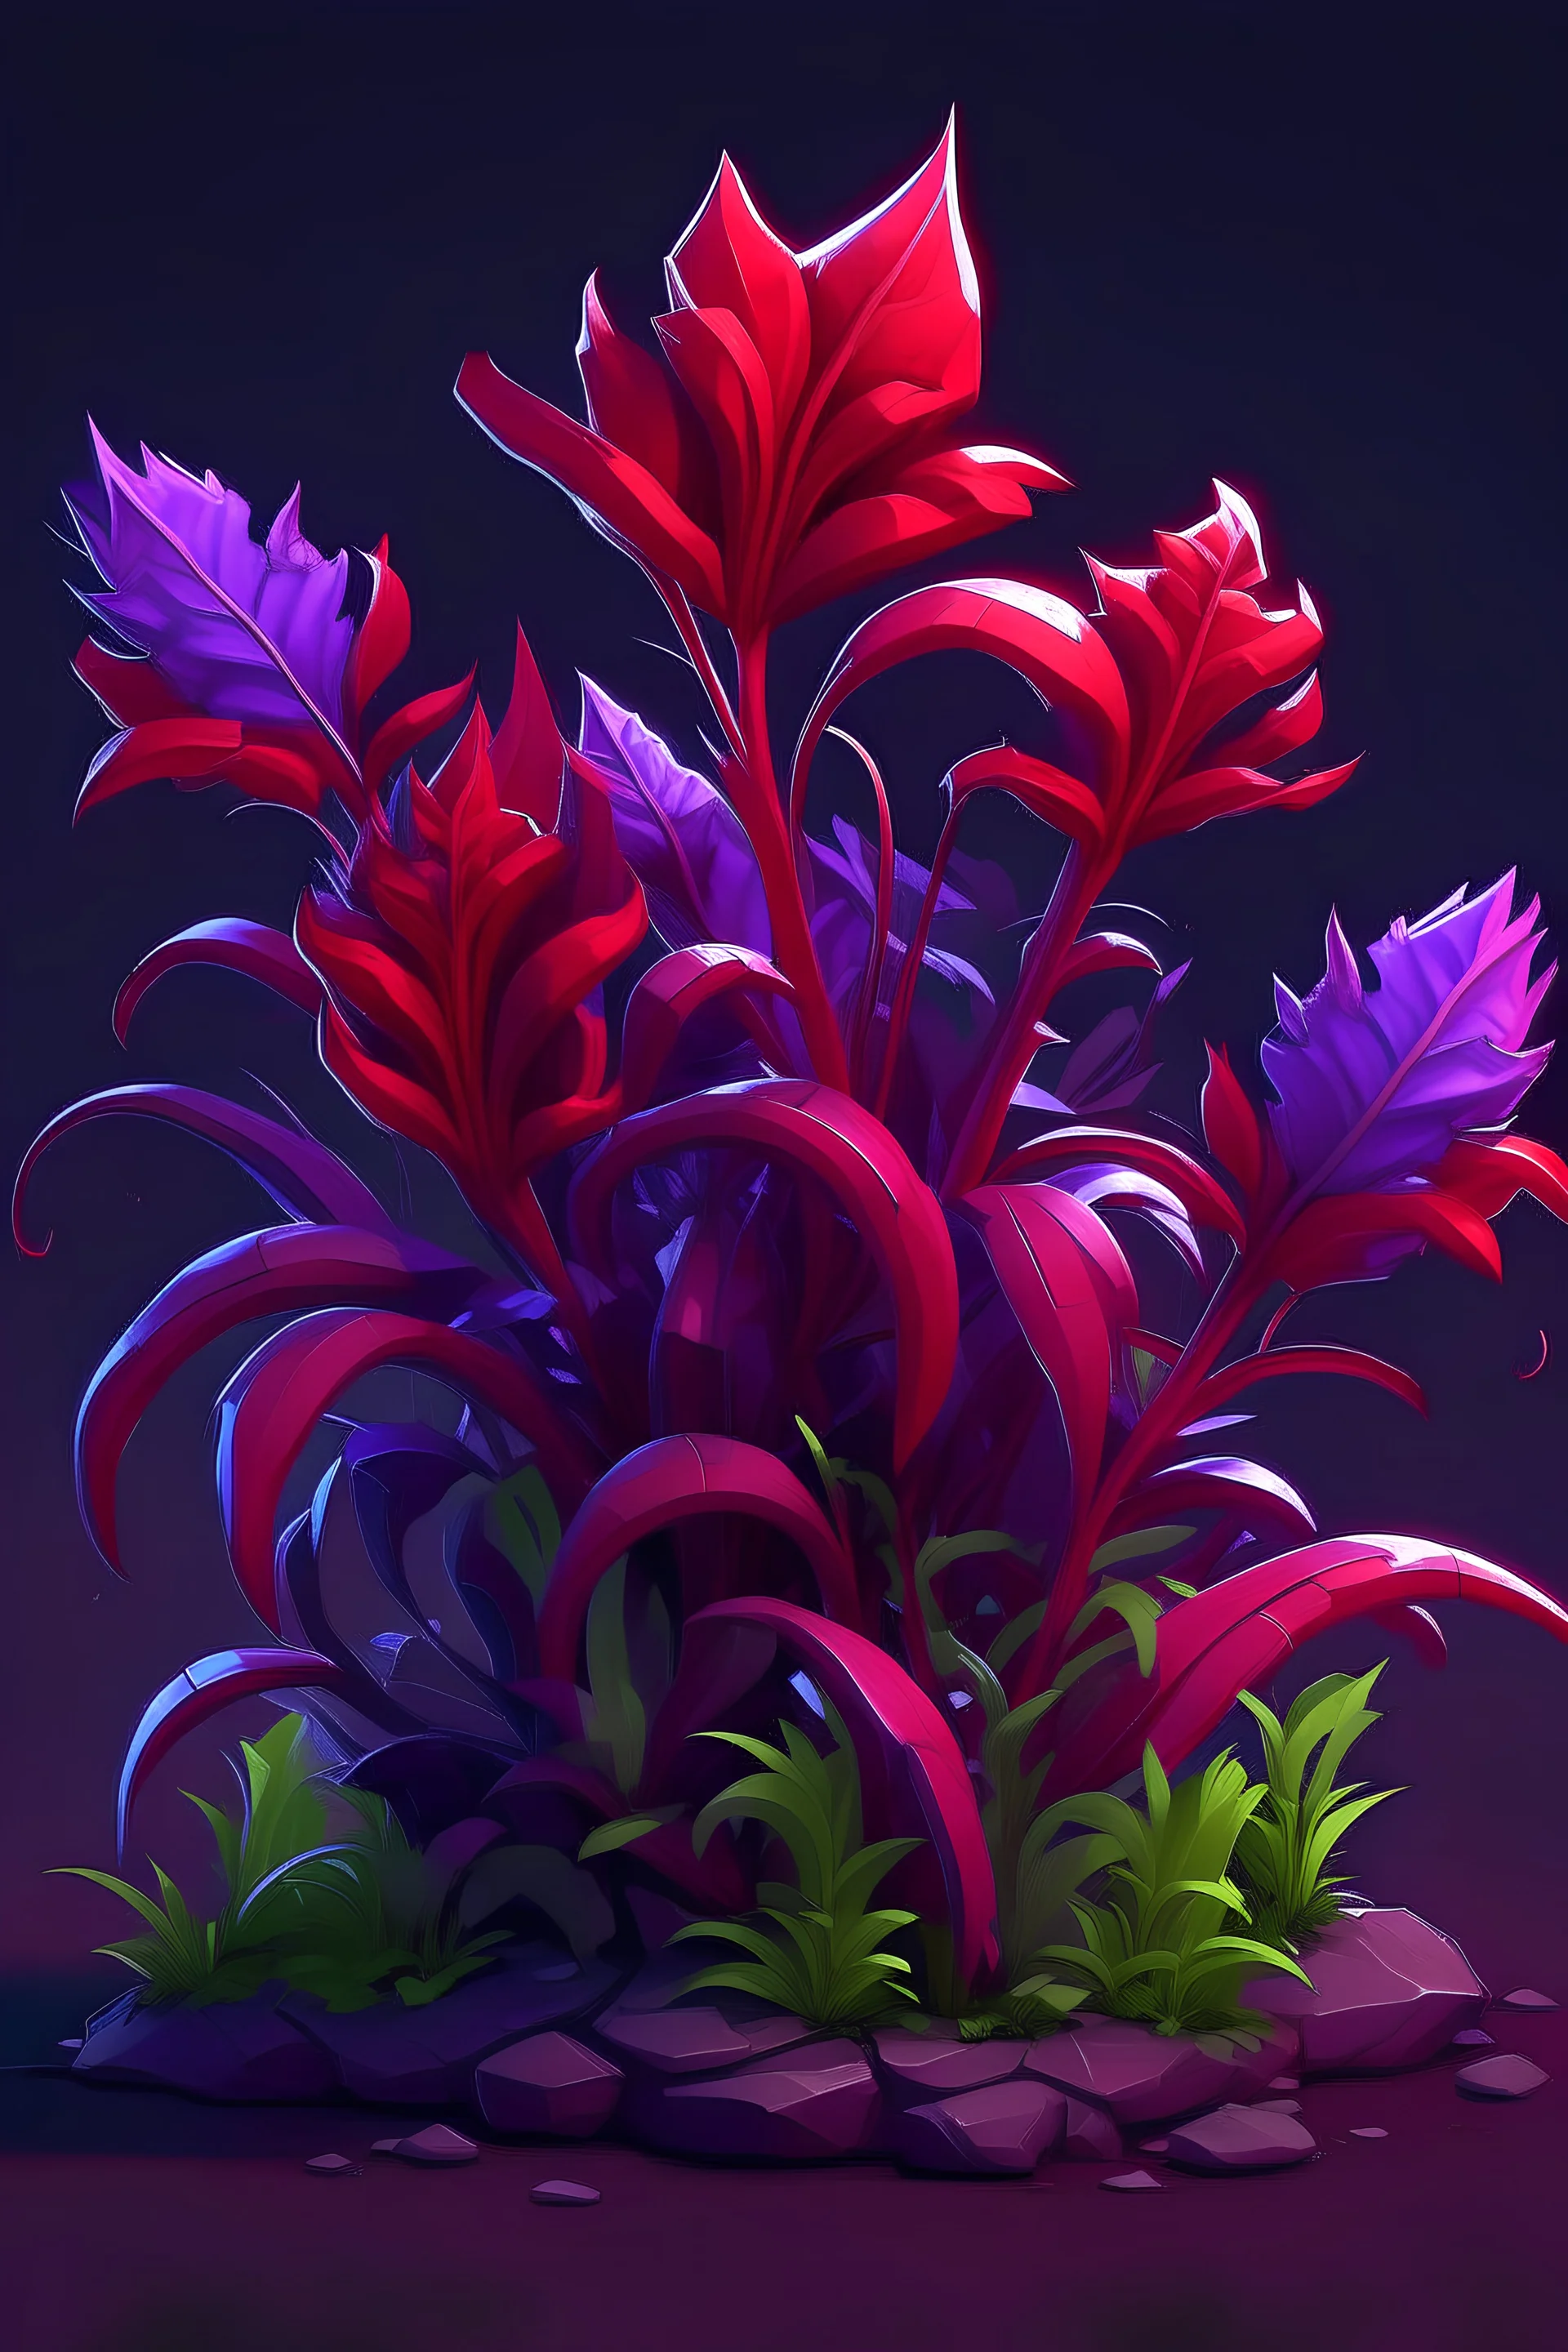 zehirli bitki, oyun stili, mor ve kırmızı renklerde, epik sıra dışı görünümlü bir bitki